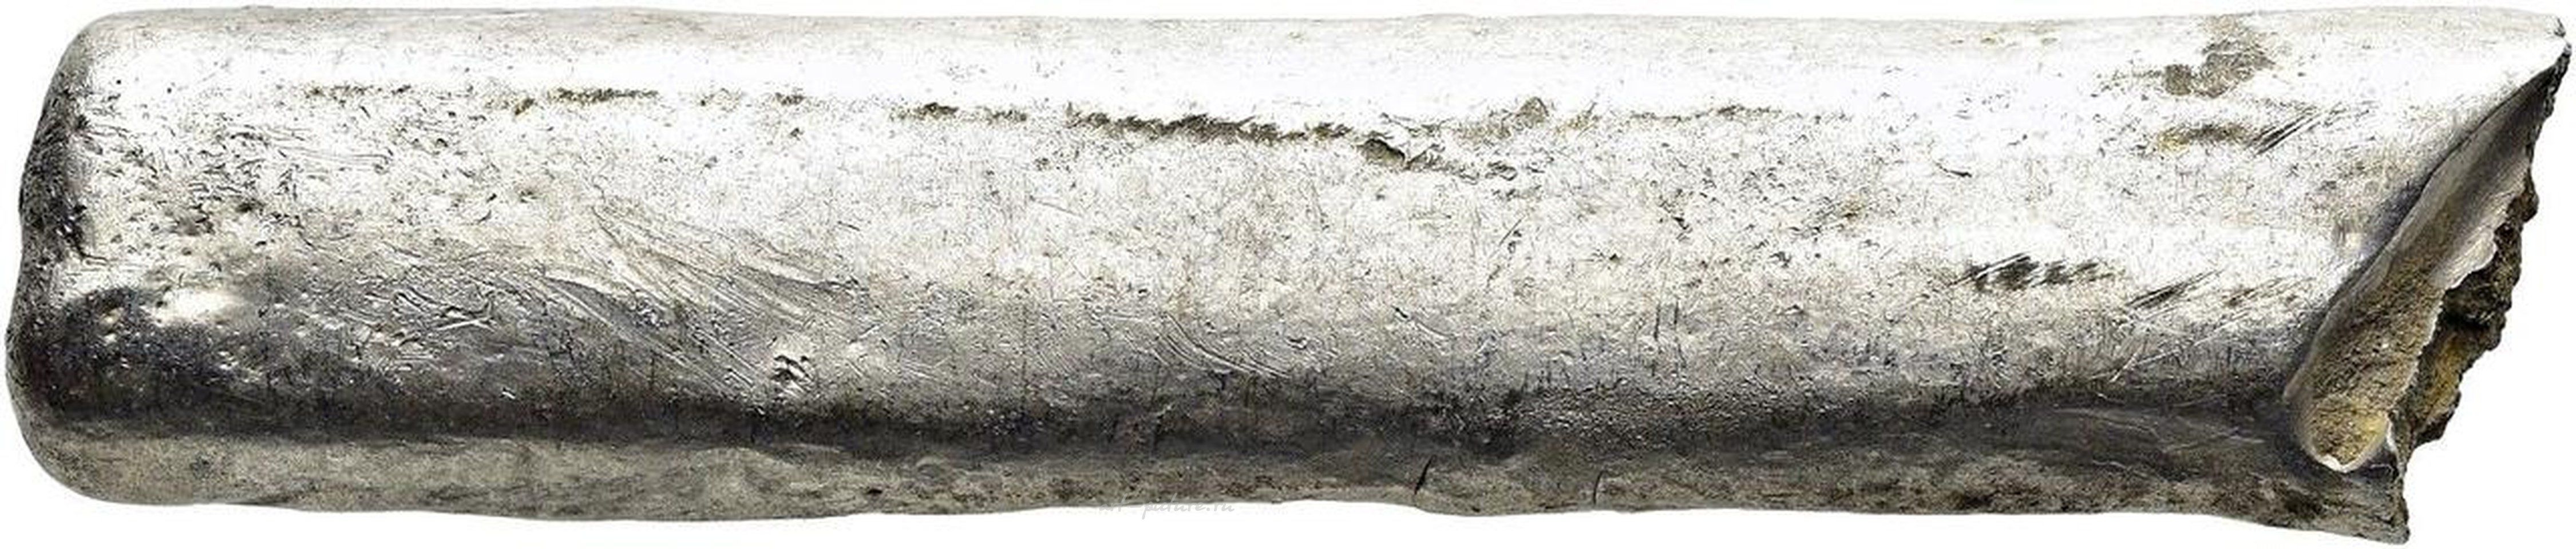 Русское серебро , Серебряный слиток формы бруса, западно-русский (литовский) тип